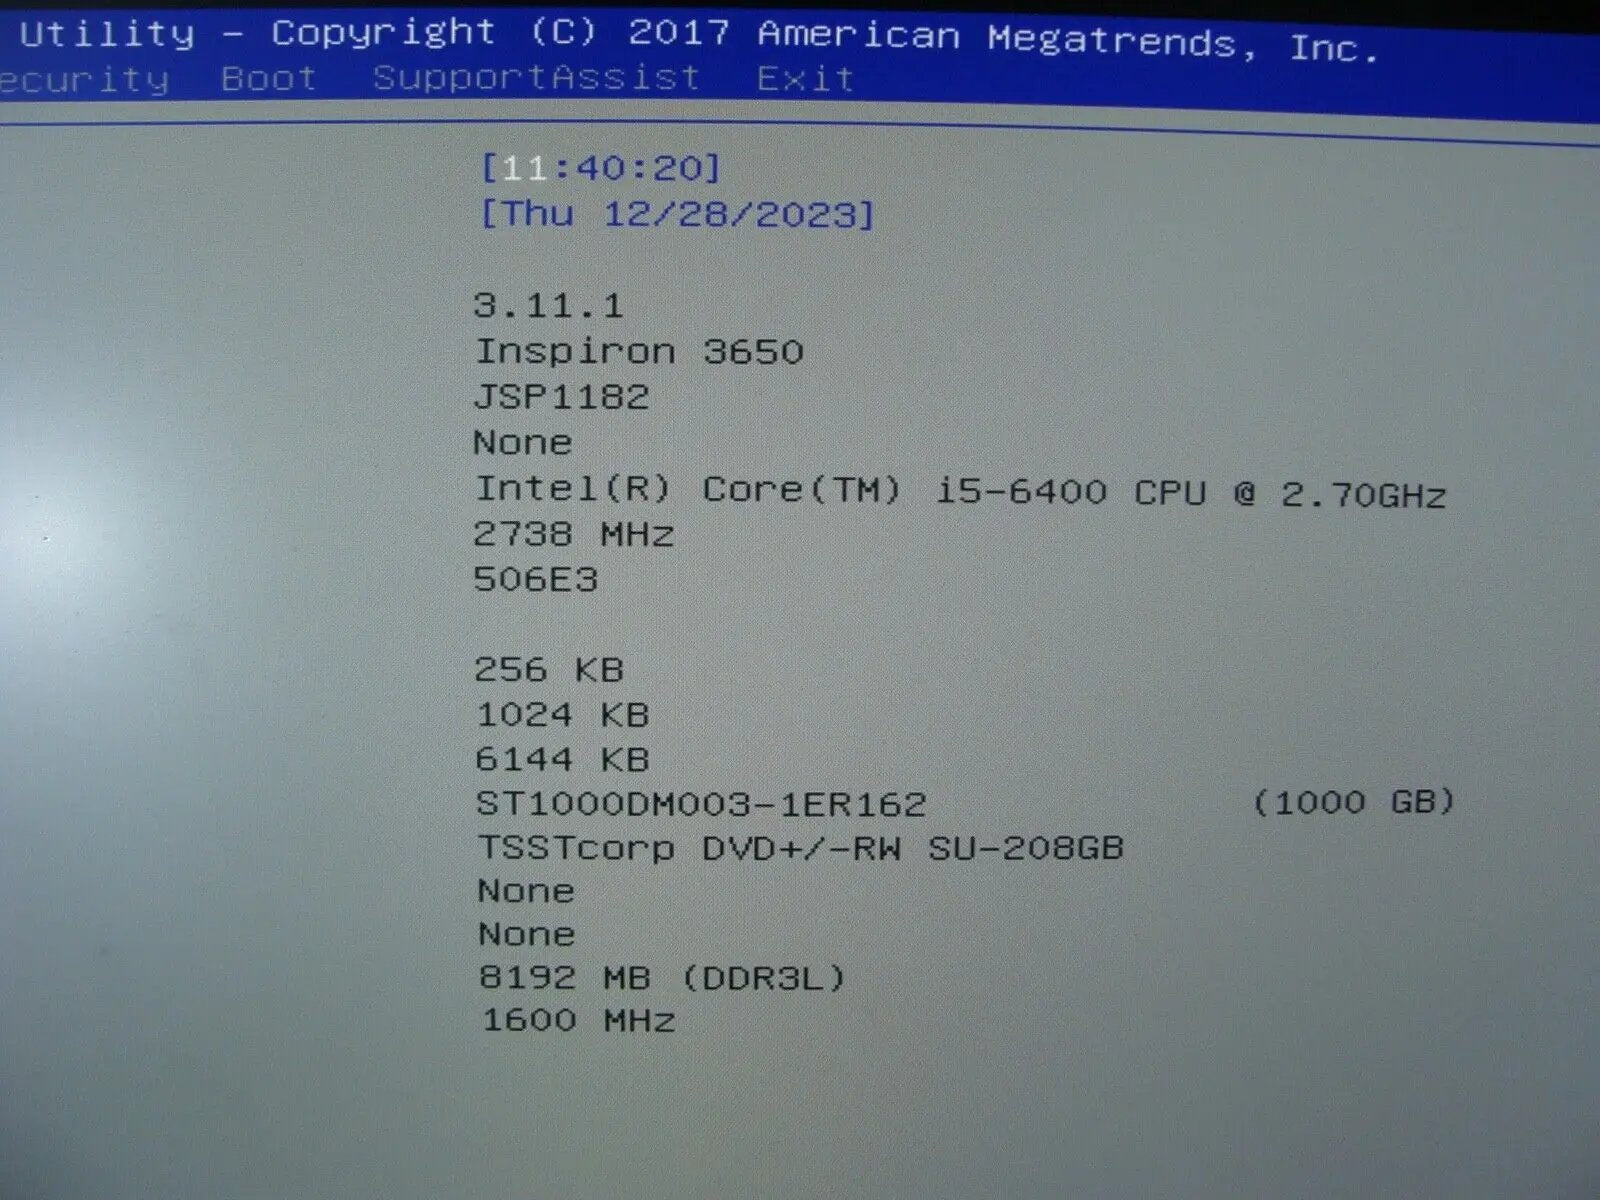 WIFI+BT Dell Inspiron 3650 MT Intel i5-6400 2.70Ghz 8GB RAM 1TB HDD Nvidia GT730